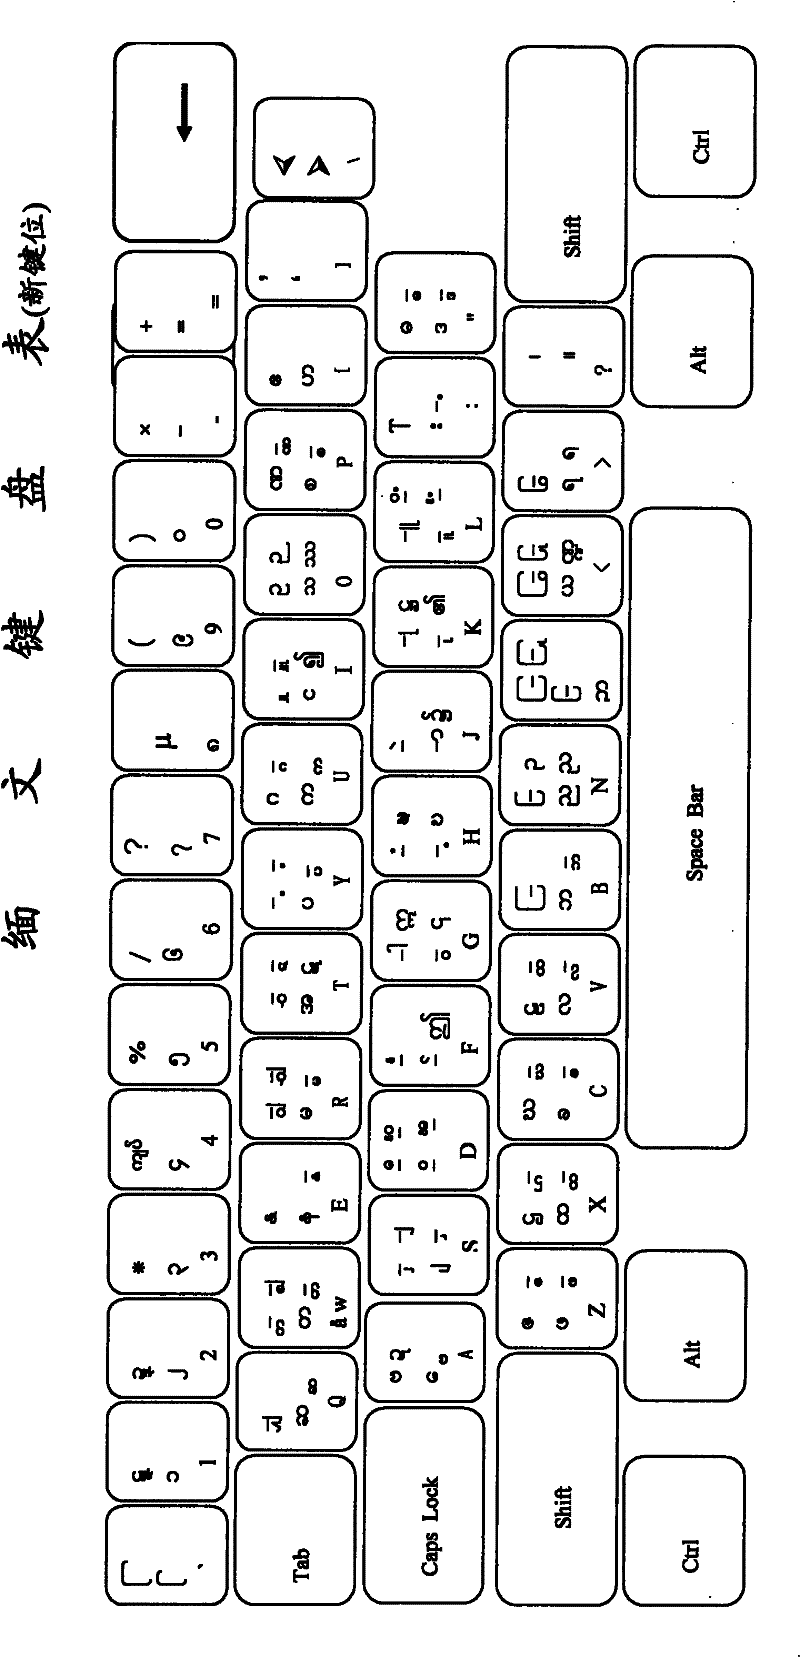 Burmese computer input method